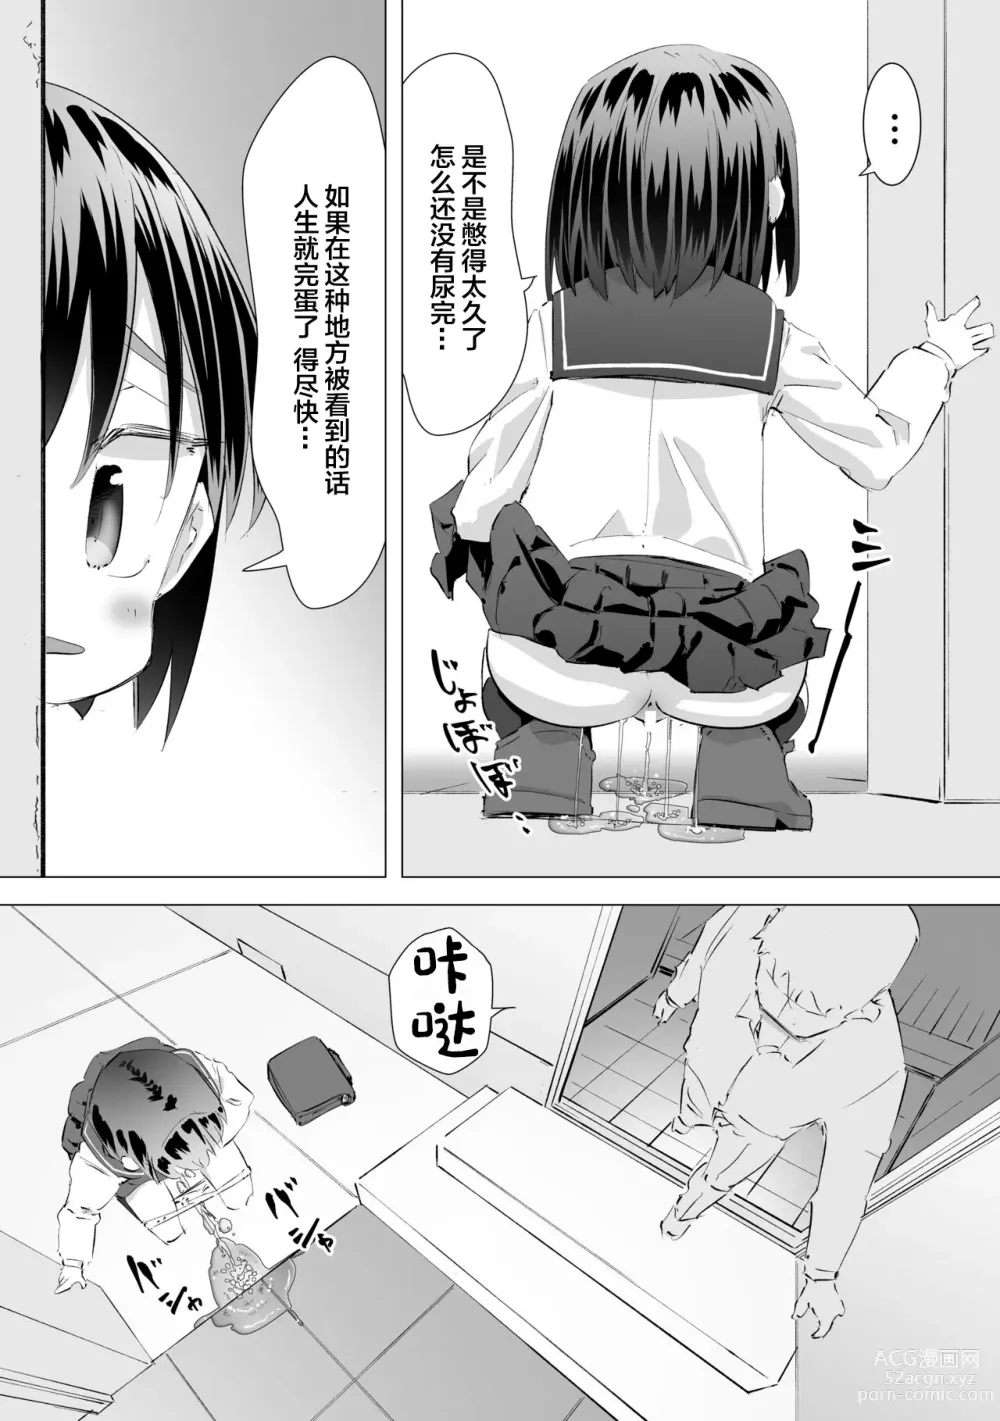 Page 4 of doujinshi 在别人家的院子里忍不住尿了出来被大叔发现后不为人知的事情